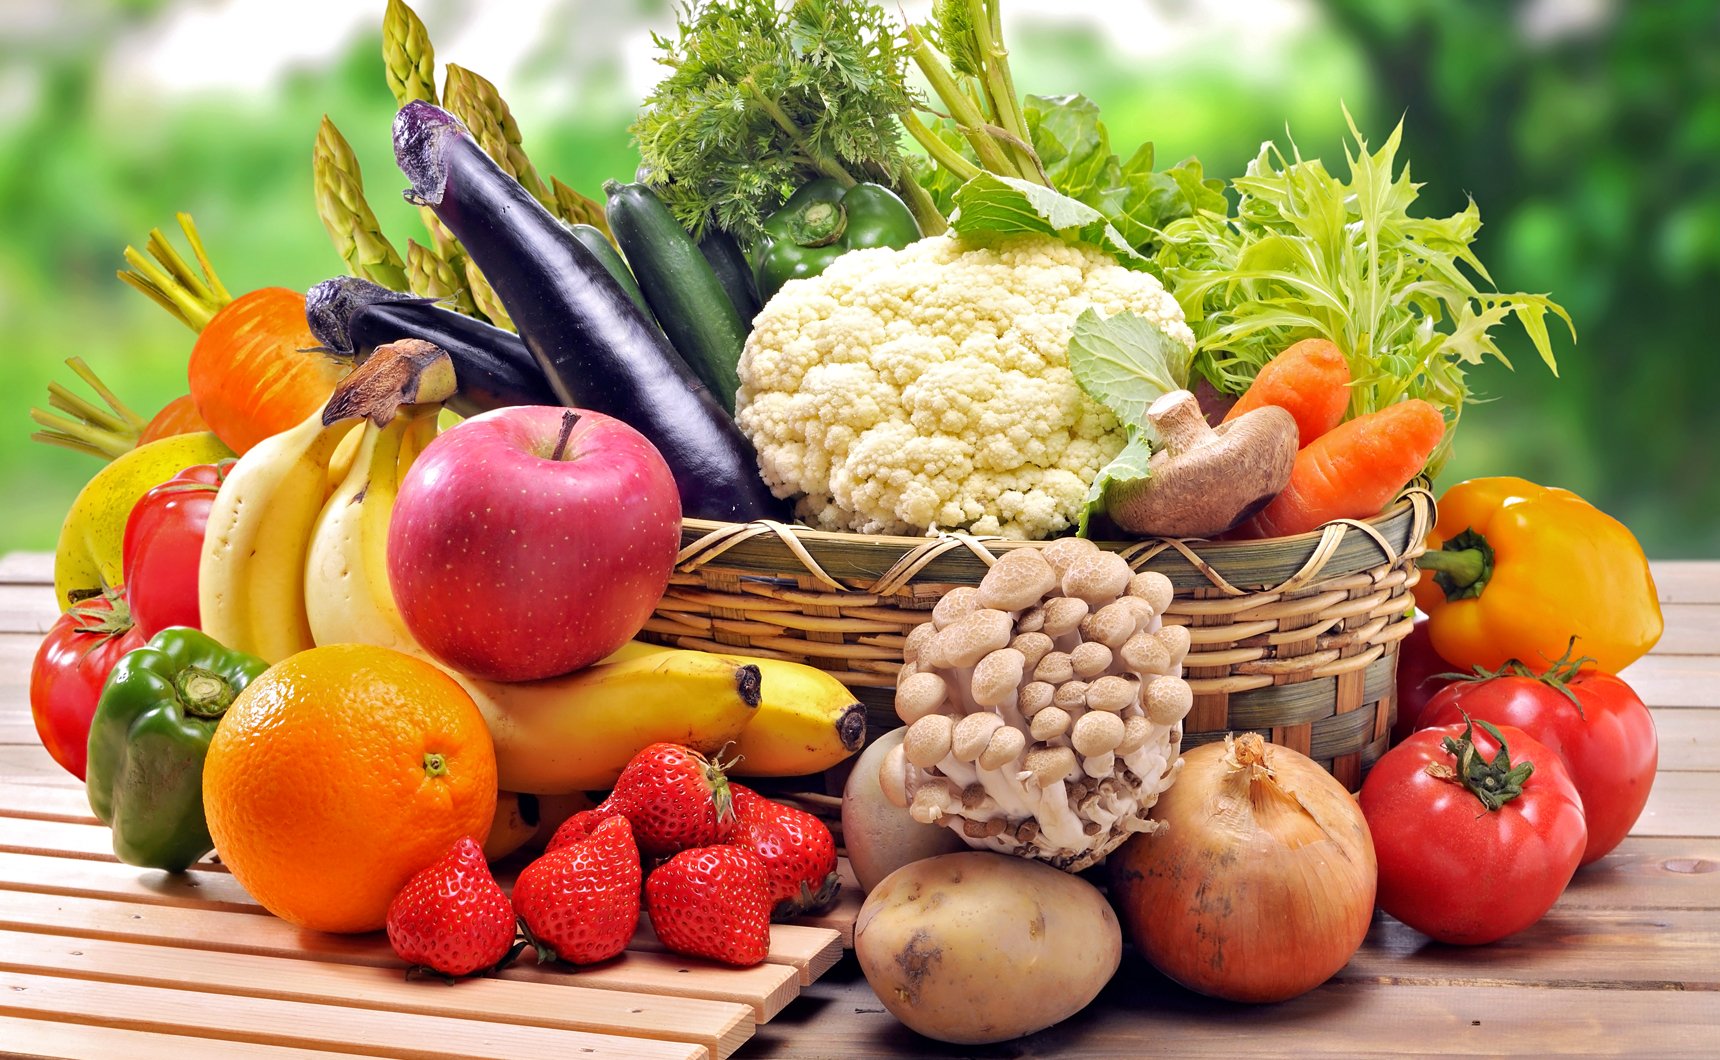 Έρευνα: 800 γρ. φρούτων και λαχανικών κάθε μέρα χαρίζουν περισσότερα χρόνια ζωής!